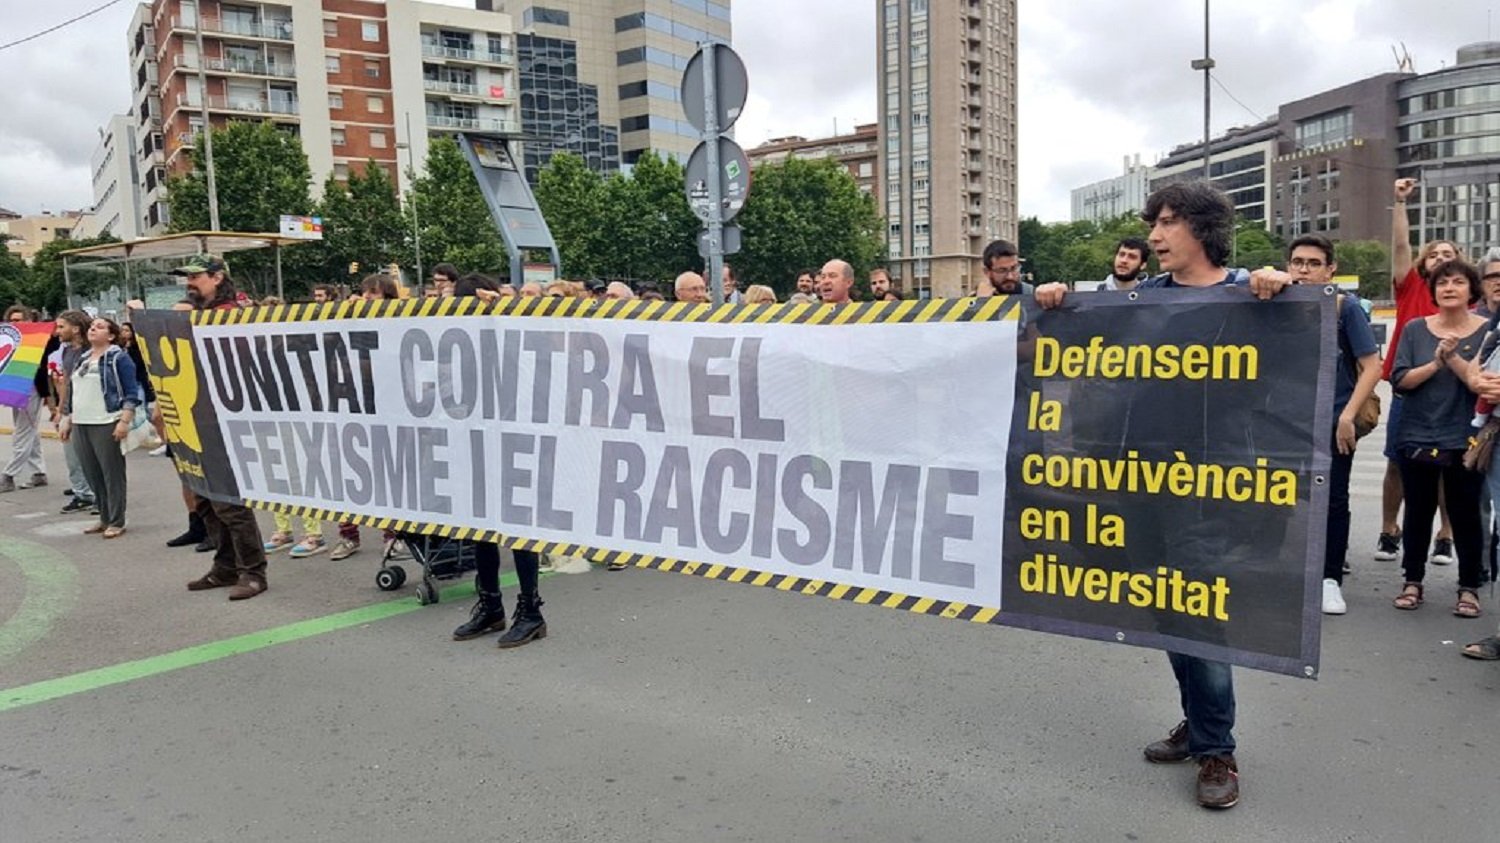 Protestas por el acto de presentación del partido de ultraderecha Vox en Barcelona